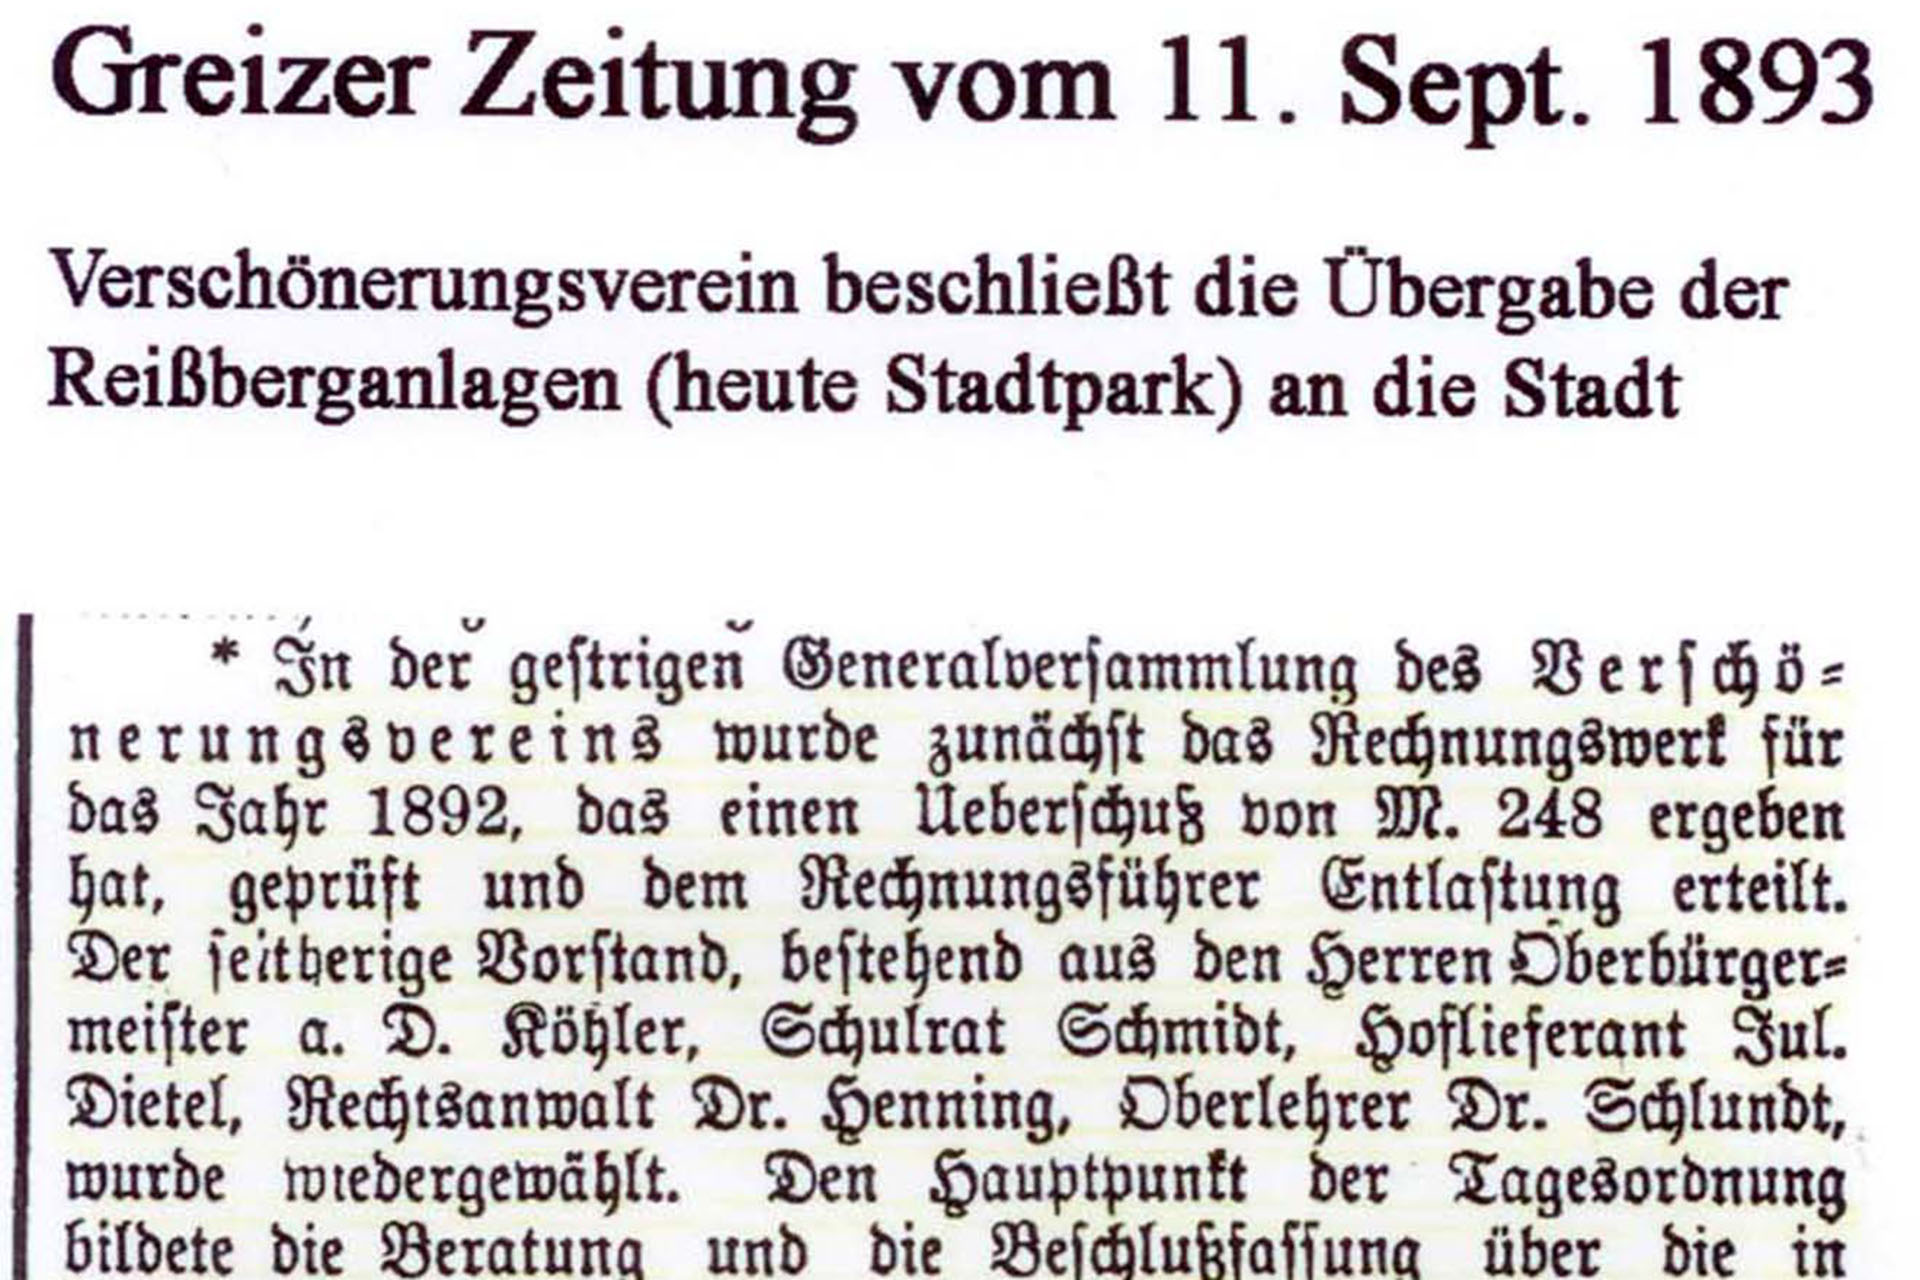 Greizer Zeitung" vom 11. September 1893